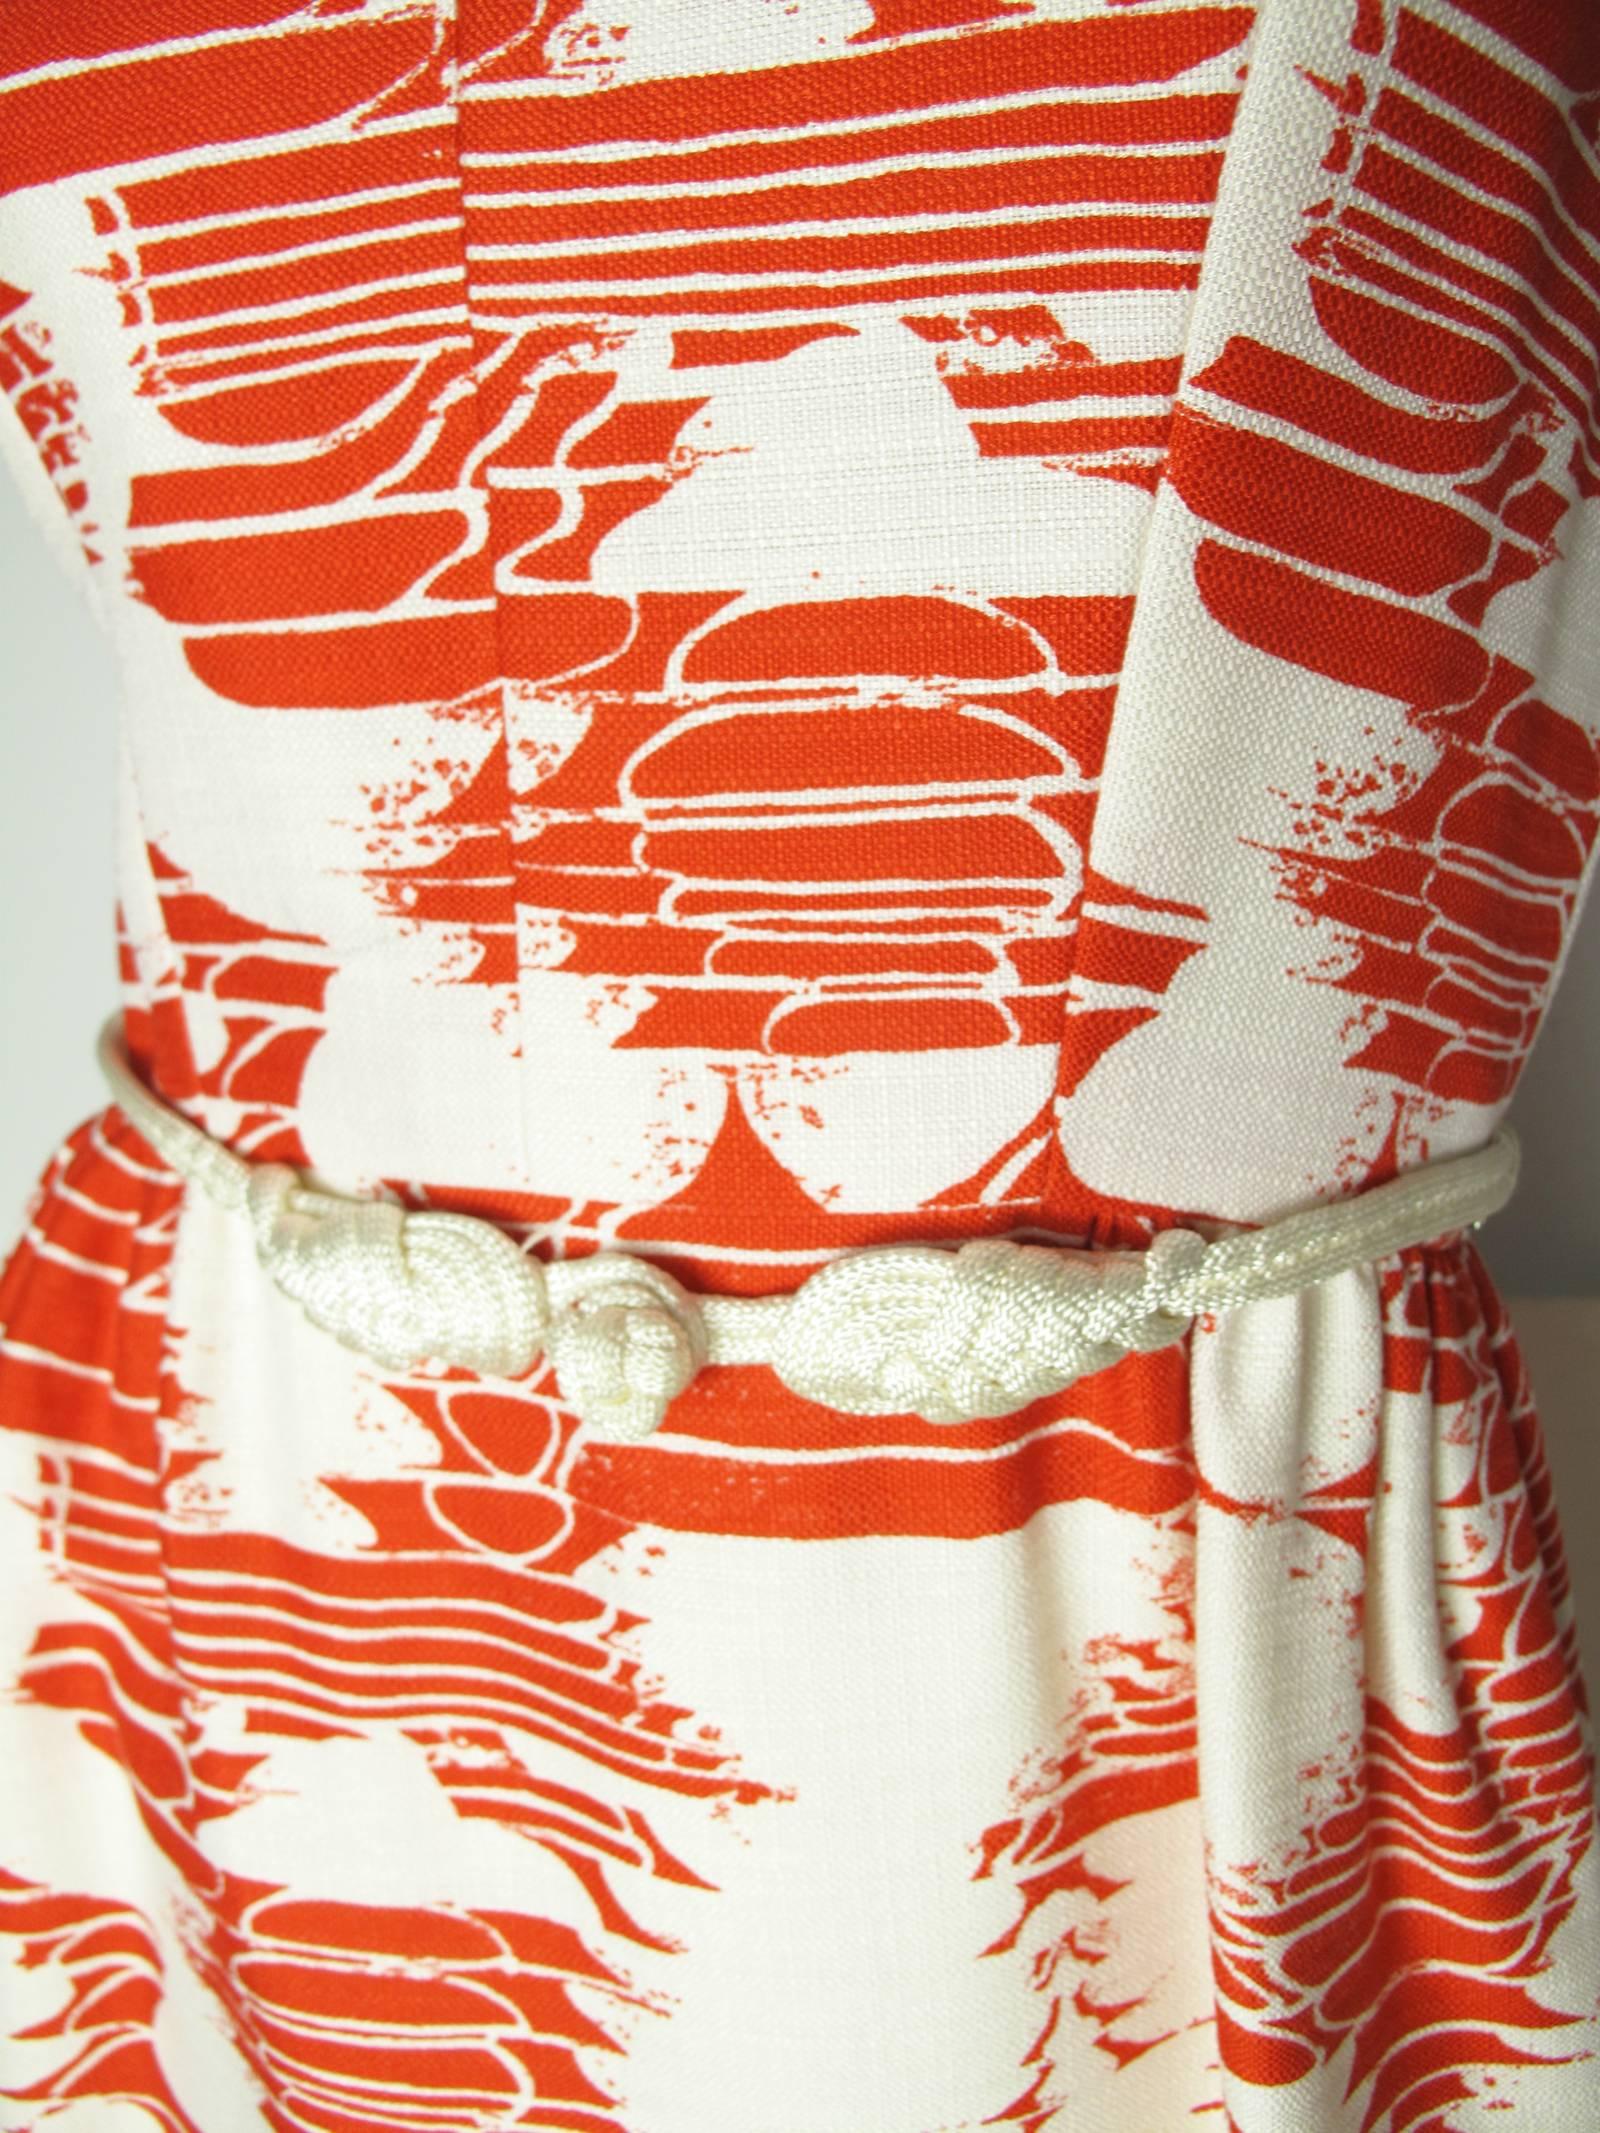 Robe en lin rouge et blanc Adele Simpson des années 1960 avec ceinture en corde et poches latérales, col en V, fermeture éclair dans le dos. État : excellent. Taille Moyenne

Nous acceptons les retours pour remboursement, veuillez consulter nos